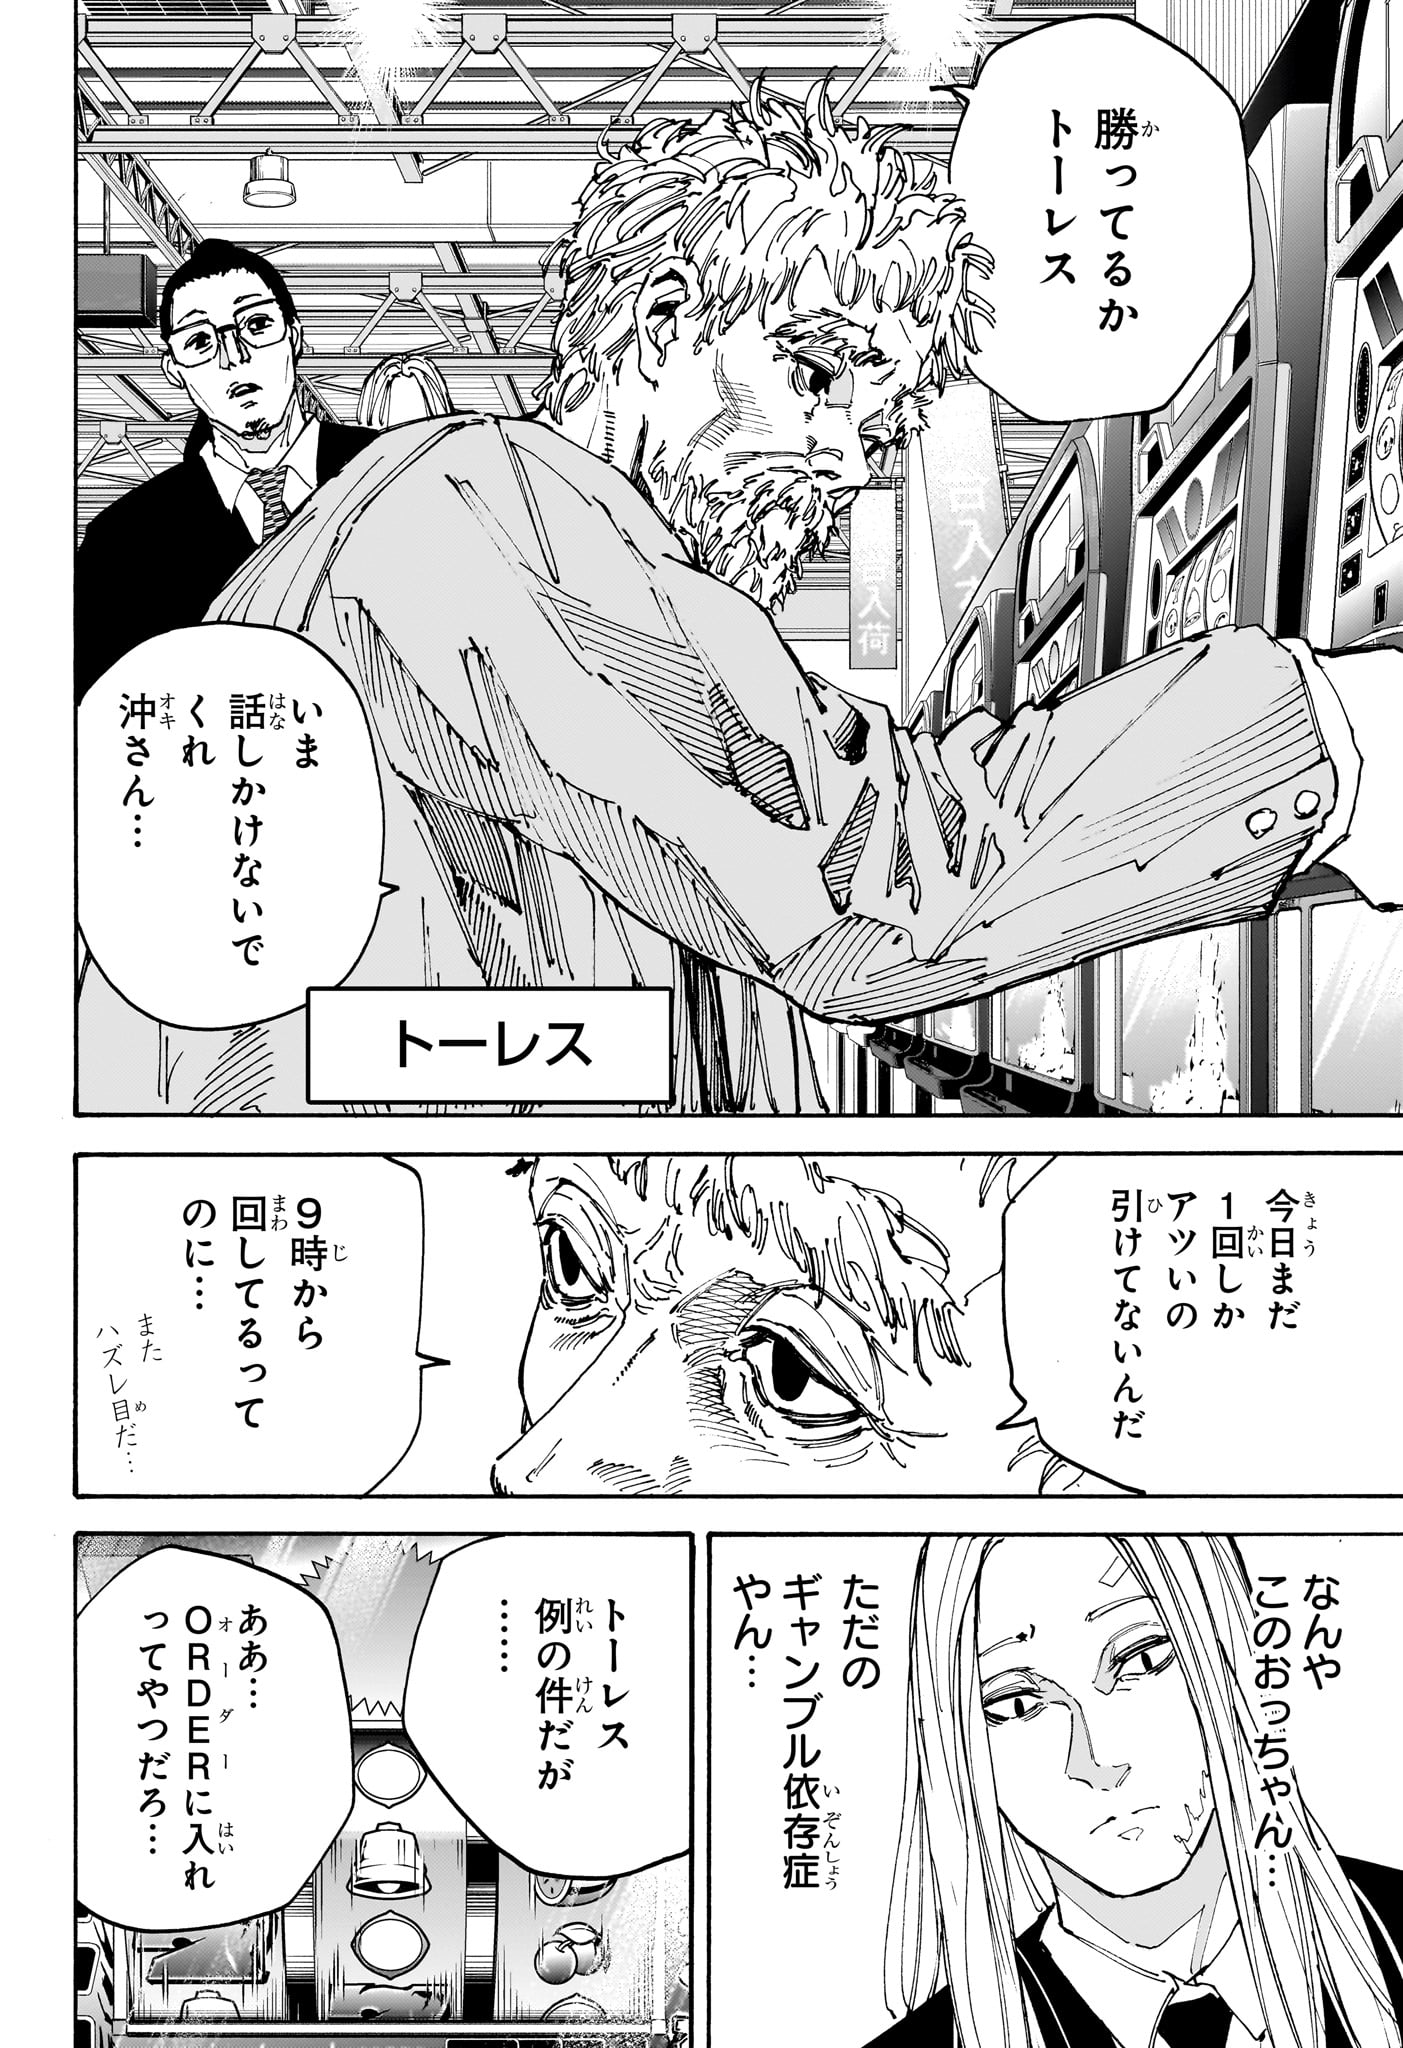 Sakamoto Days - Chapter 169 - Page 4